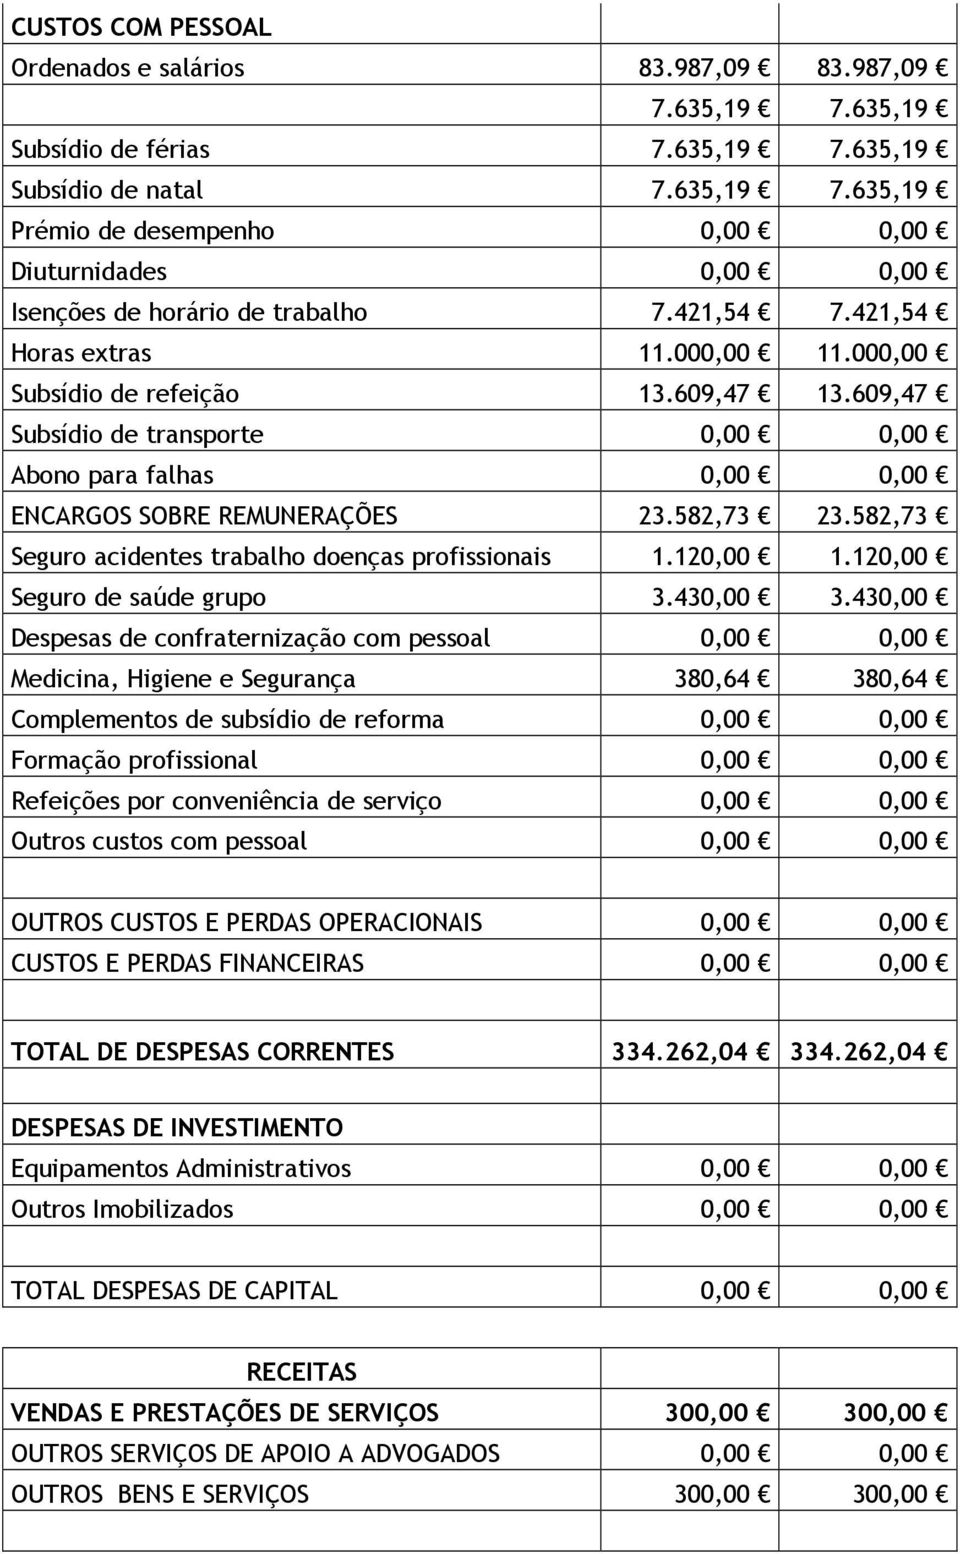 582,73 Seguro acidentes trabalho doenças profissionais 1.120,00 1.120,00 Seguro de saúde grupo 3.430,00 3.